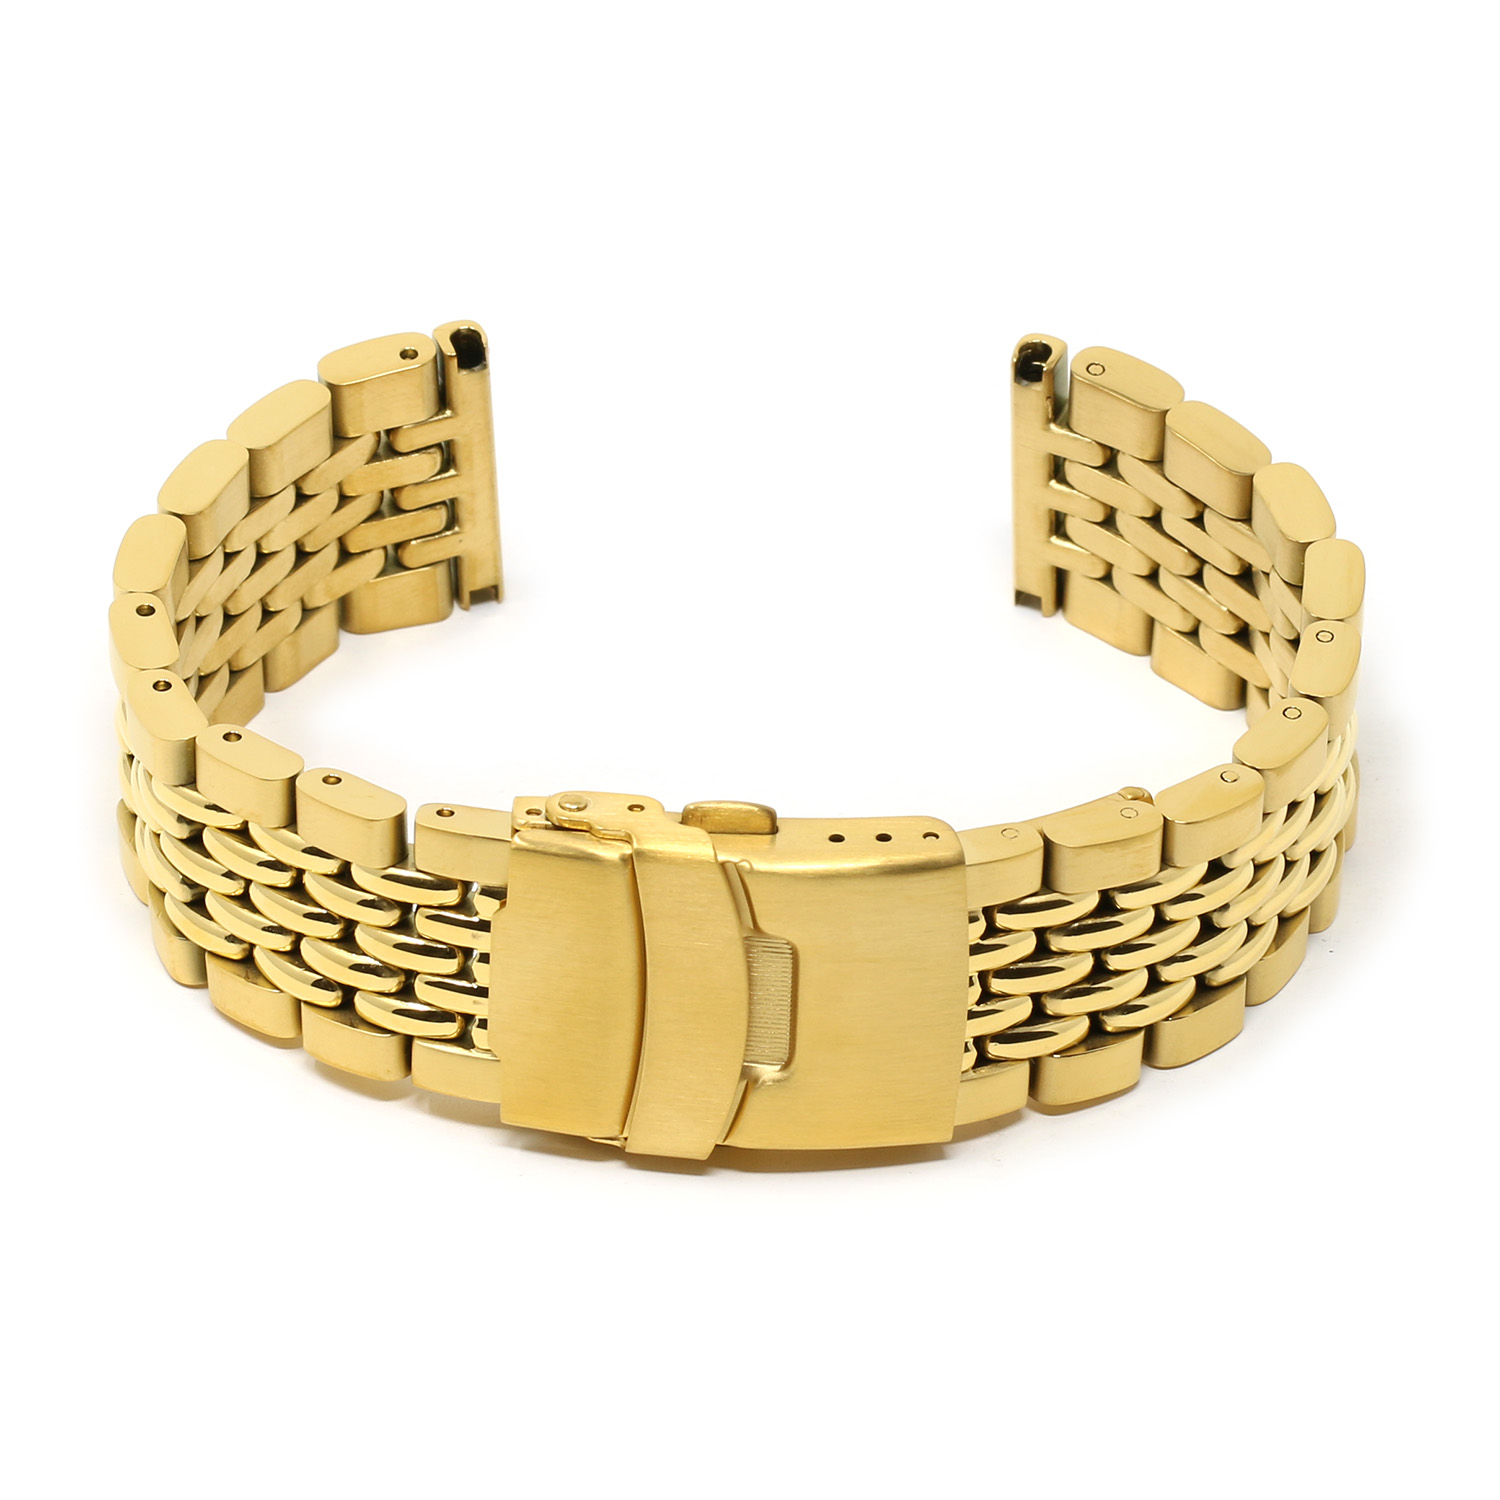 Silver gold digital men bracelet style watch